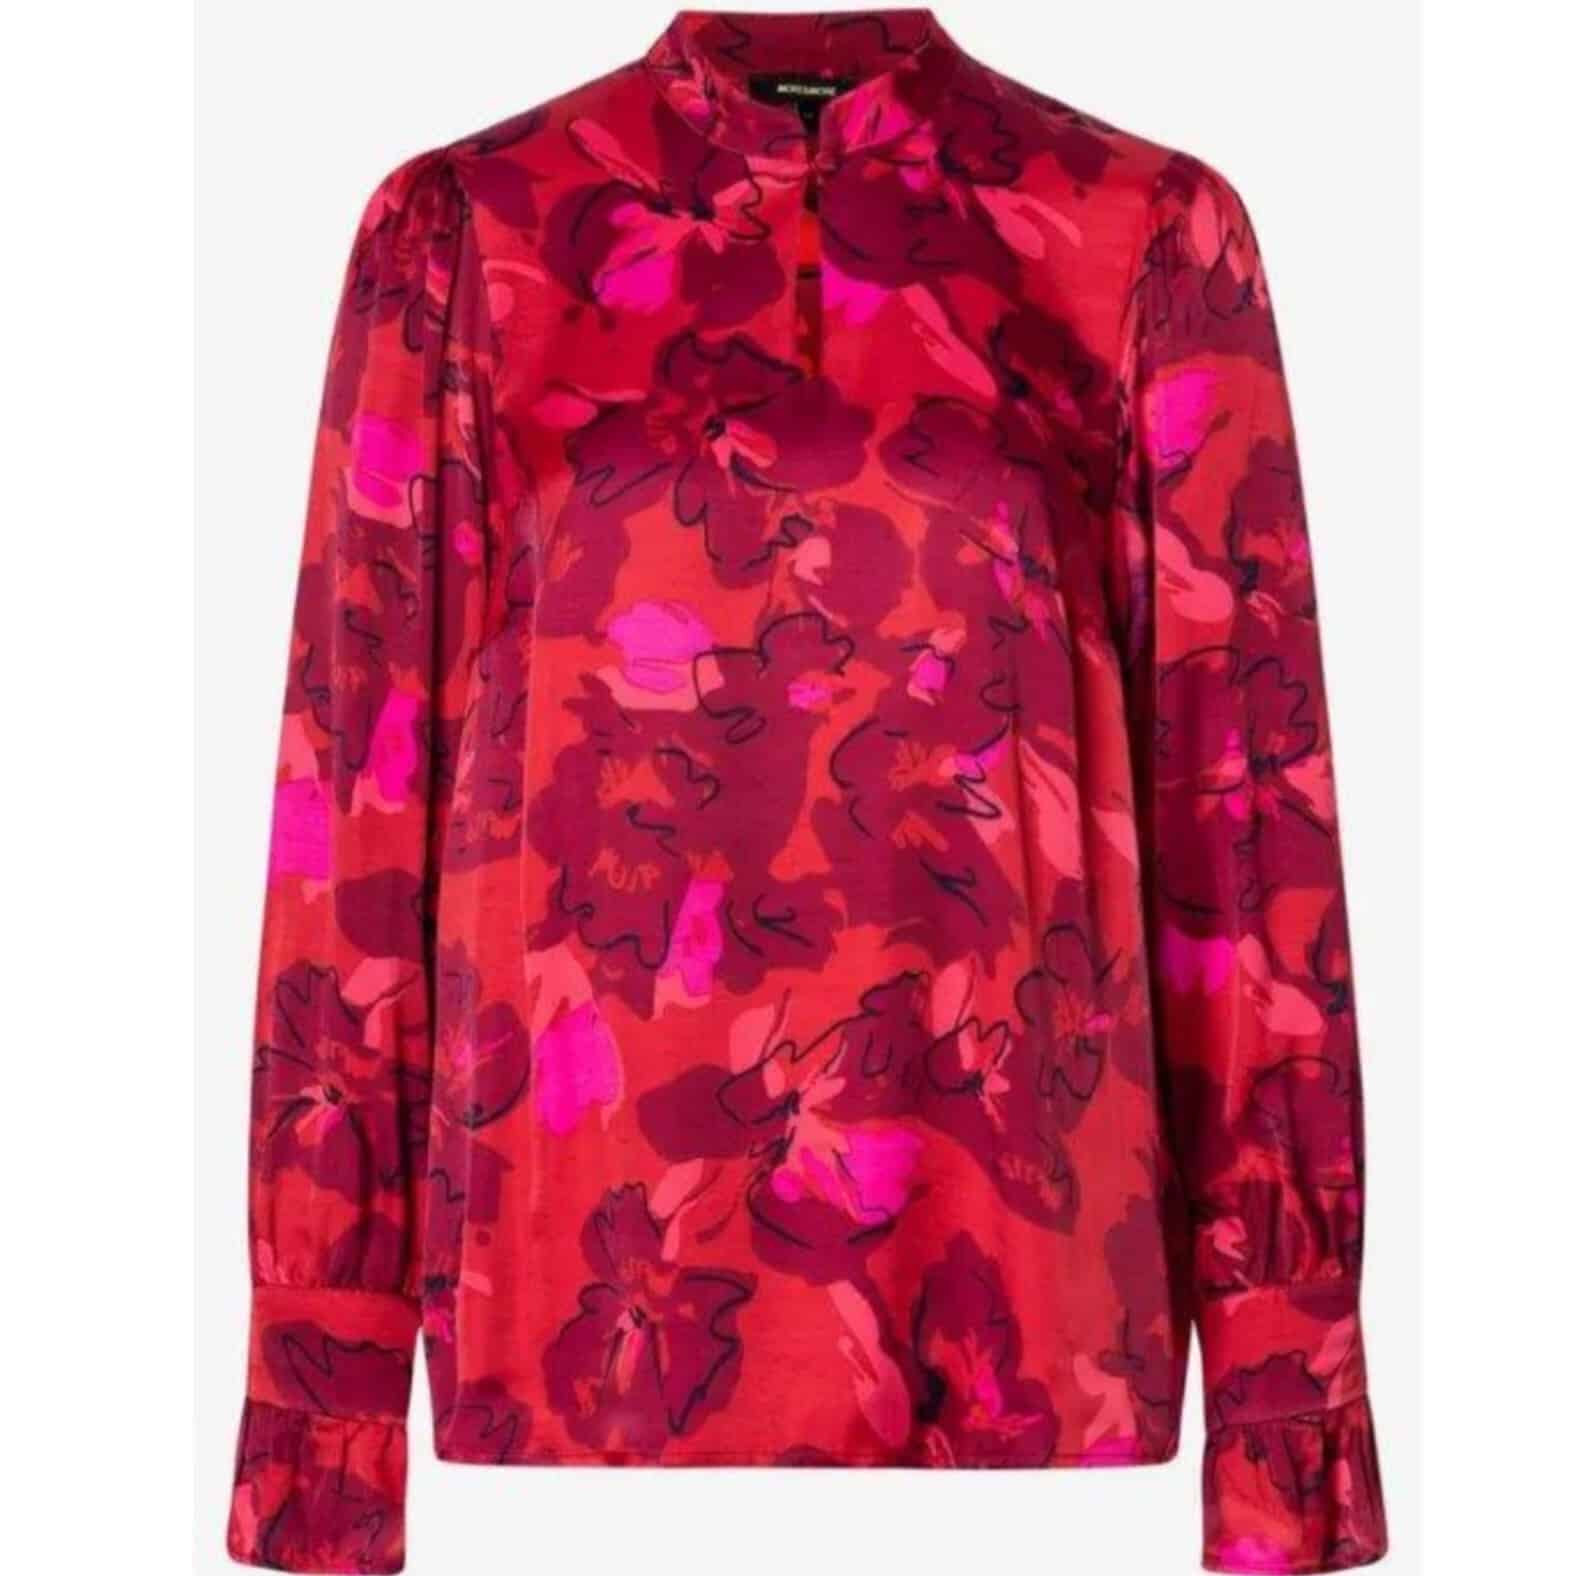 Satinbluse mit Flowerprint in rot von More and More bei Mode Sabine Lemke in Winnenden im Damenmodegeschäft oder im Onlineshop einkaufen